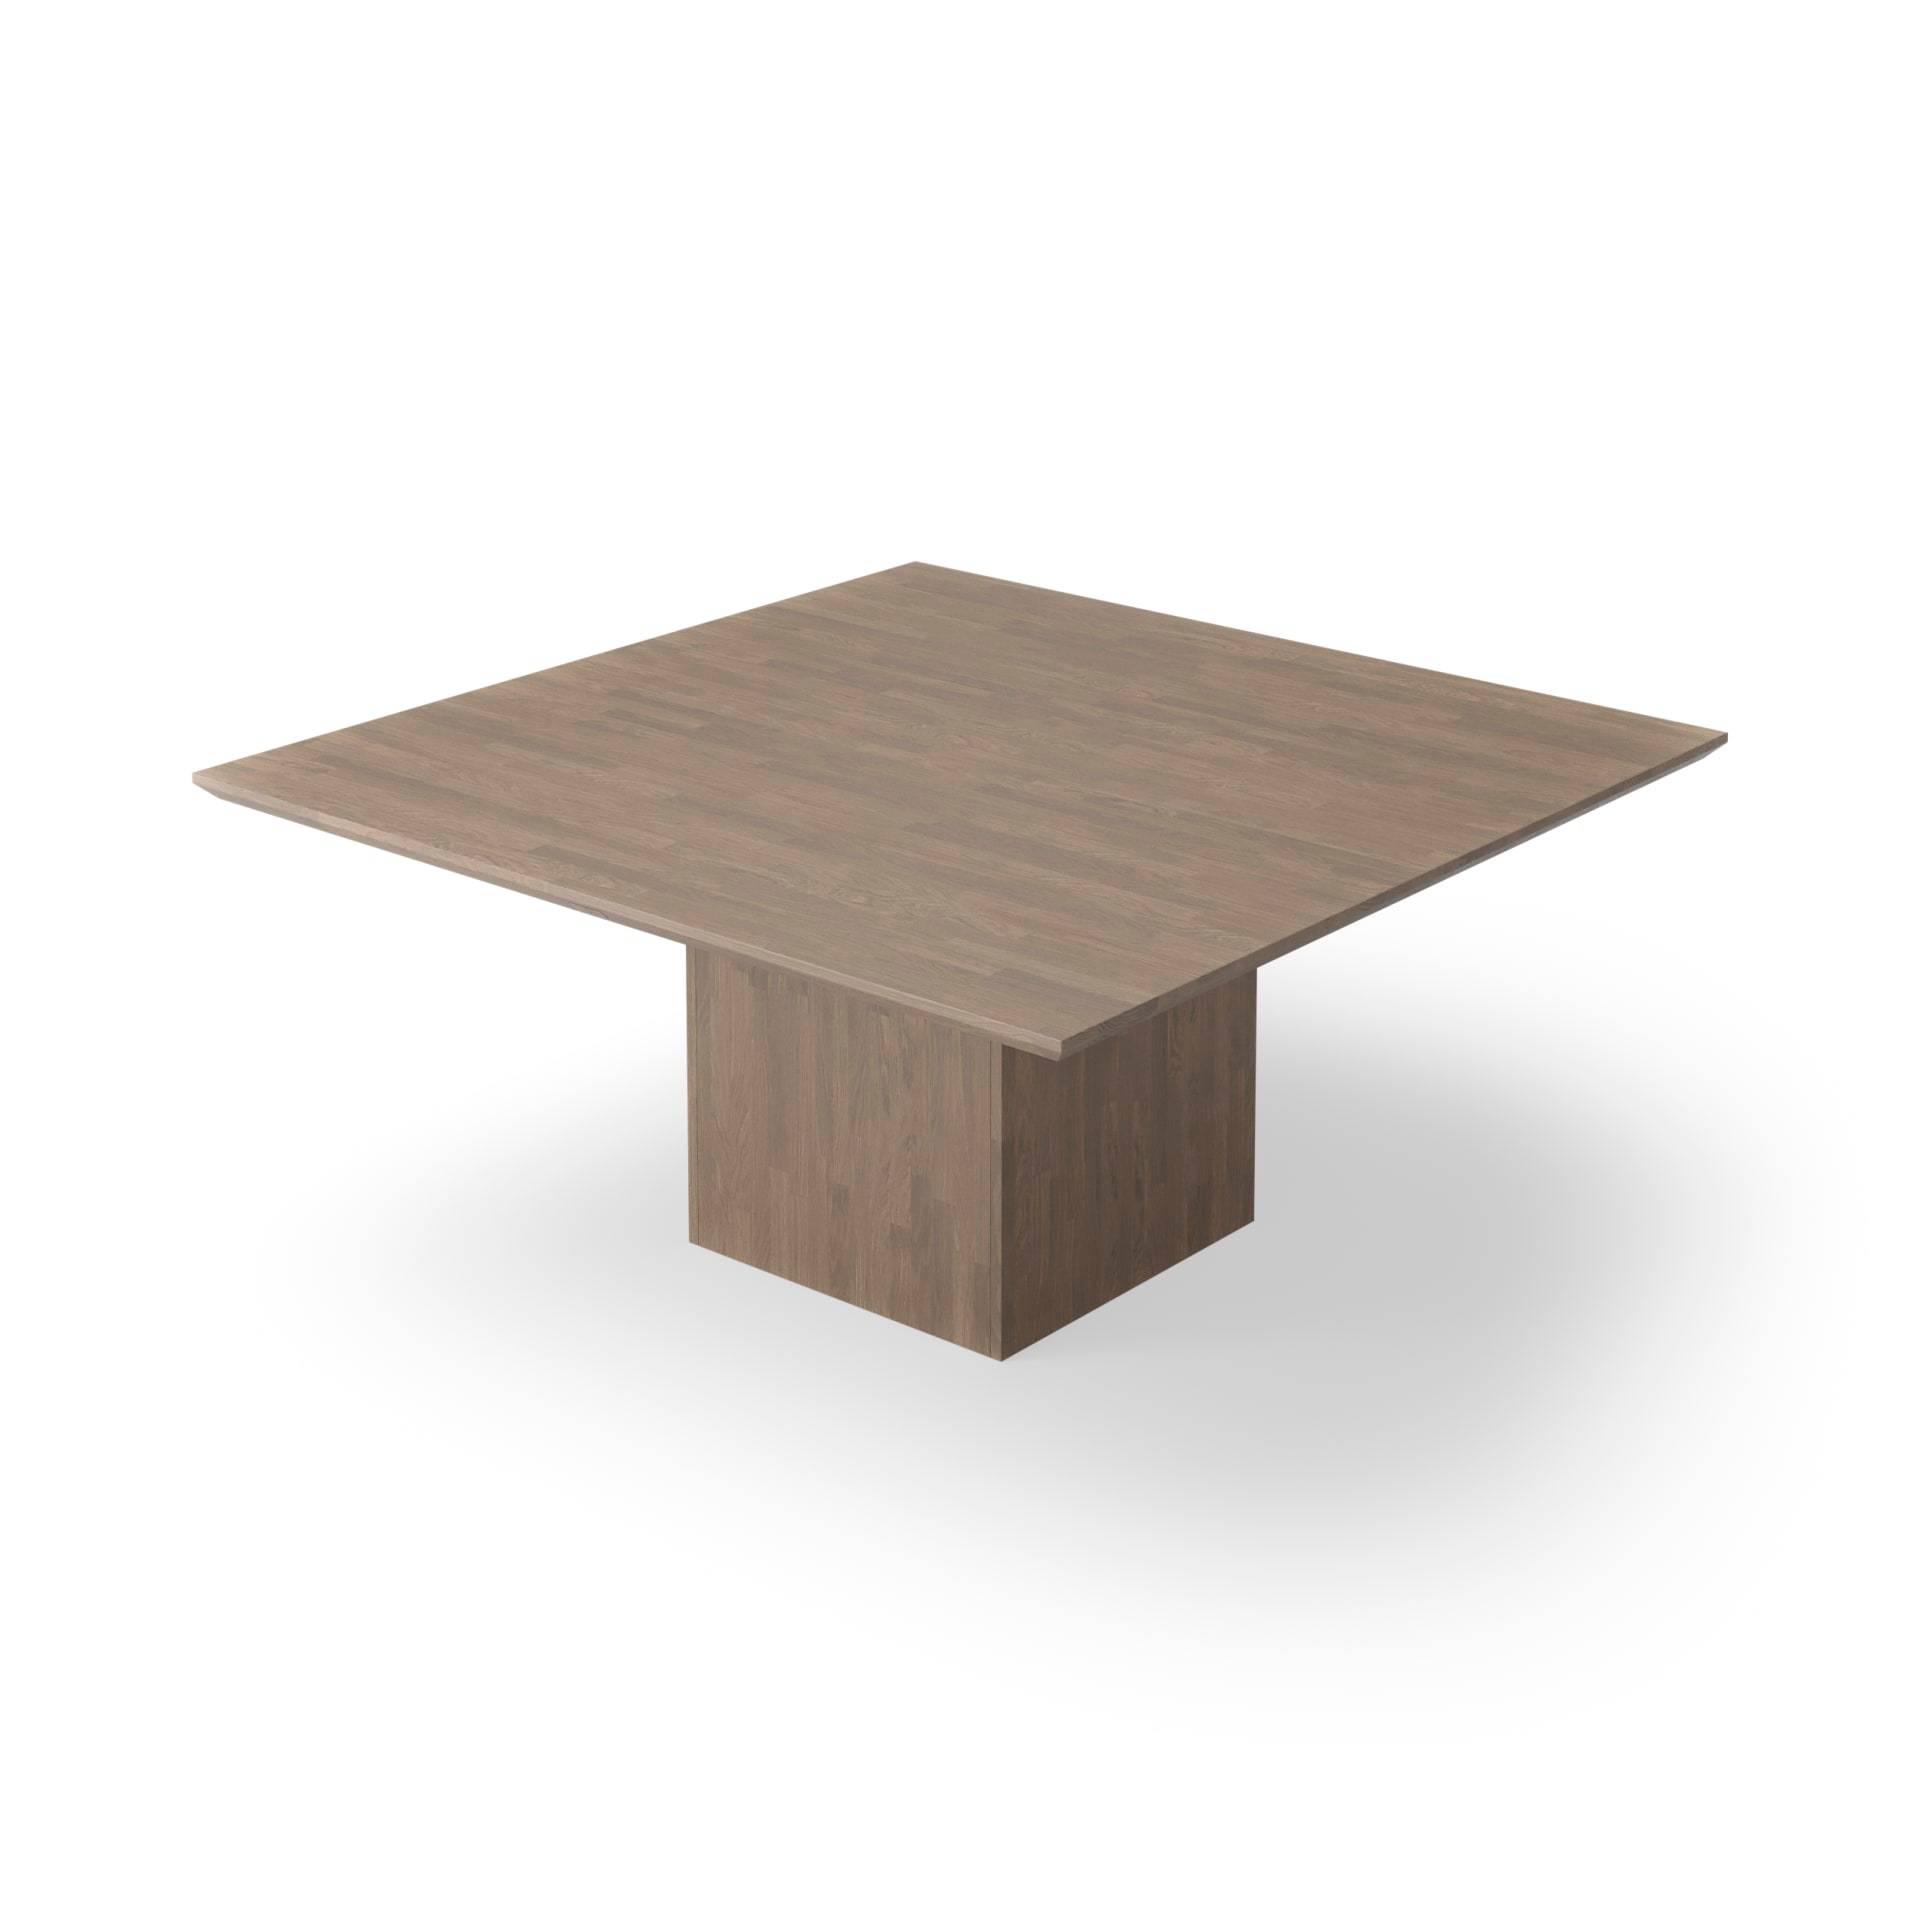 Kvadratiskt matbord med kub